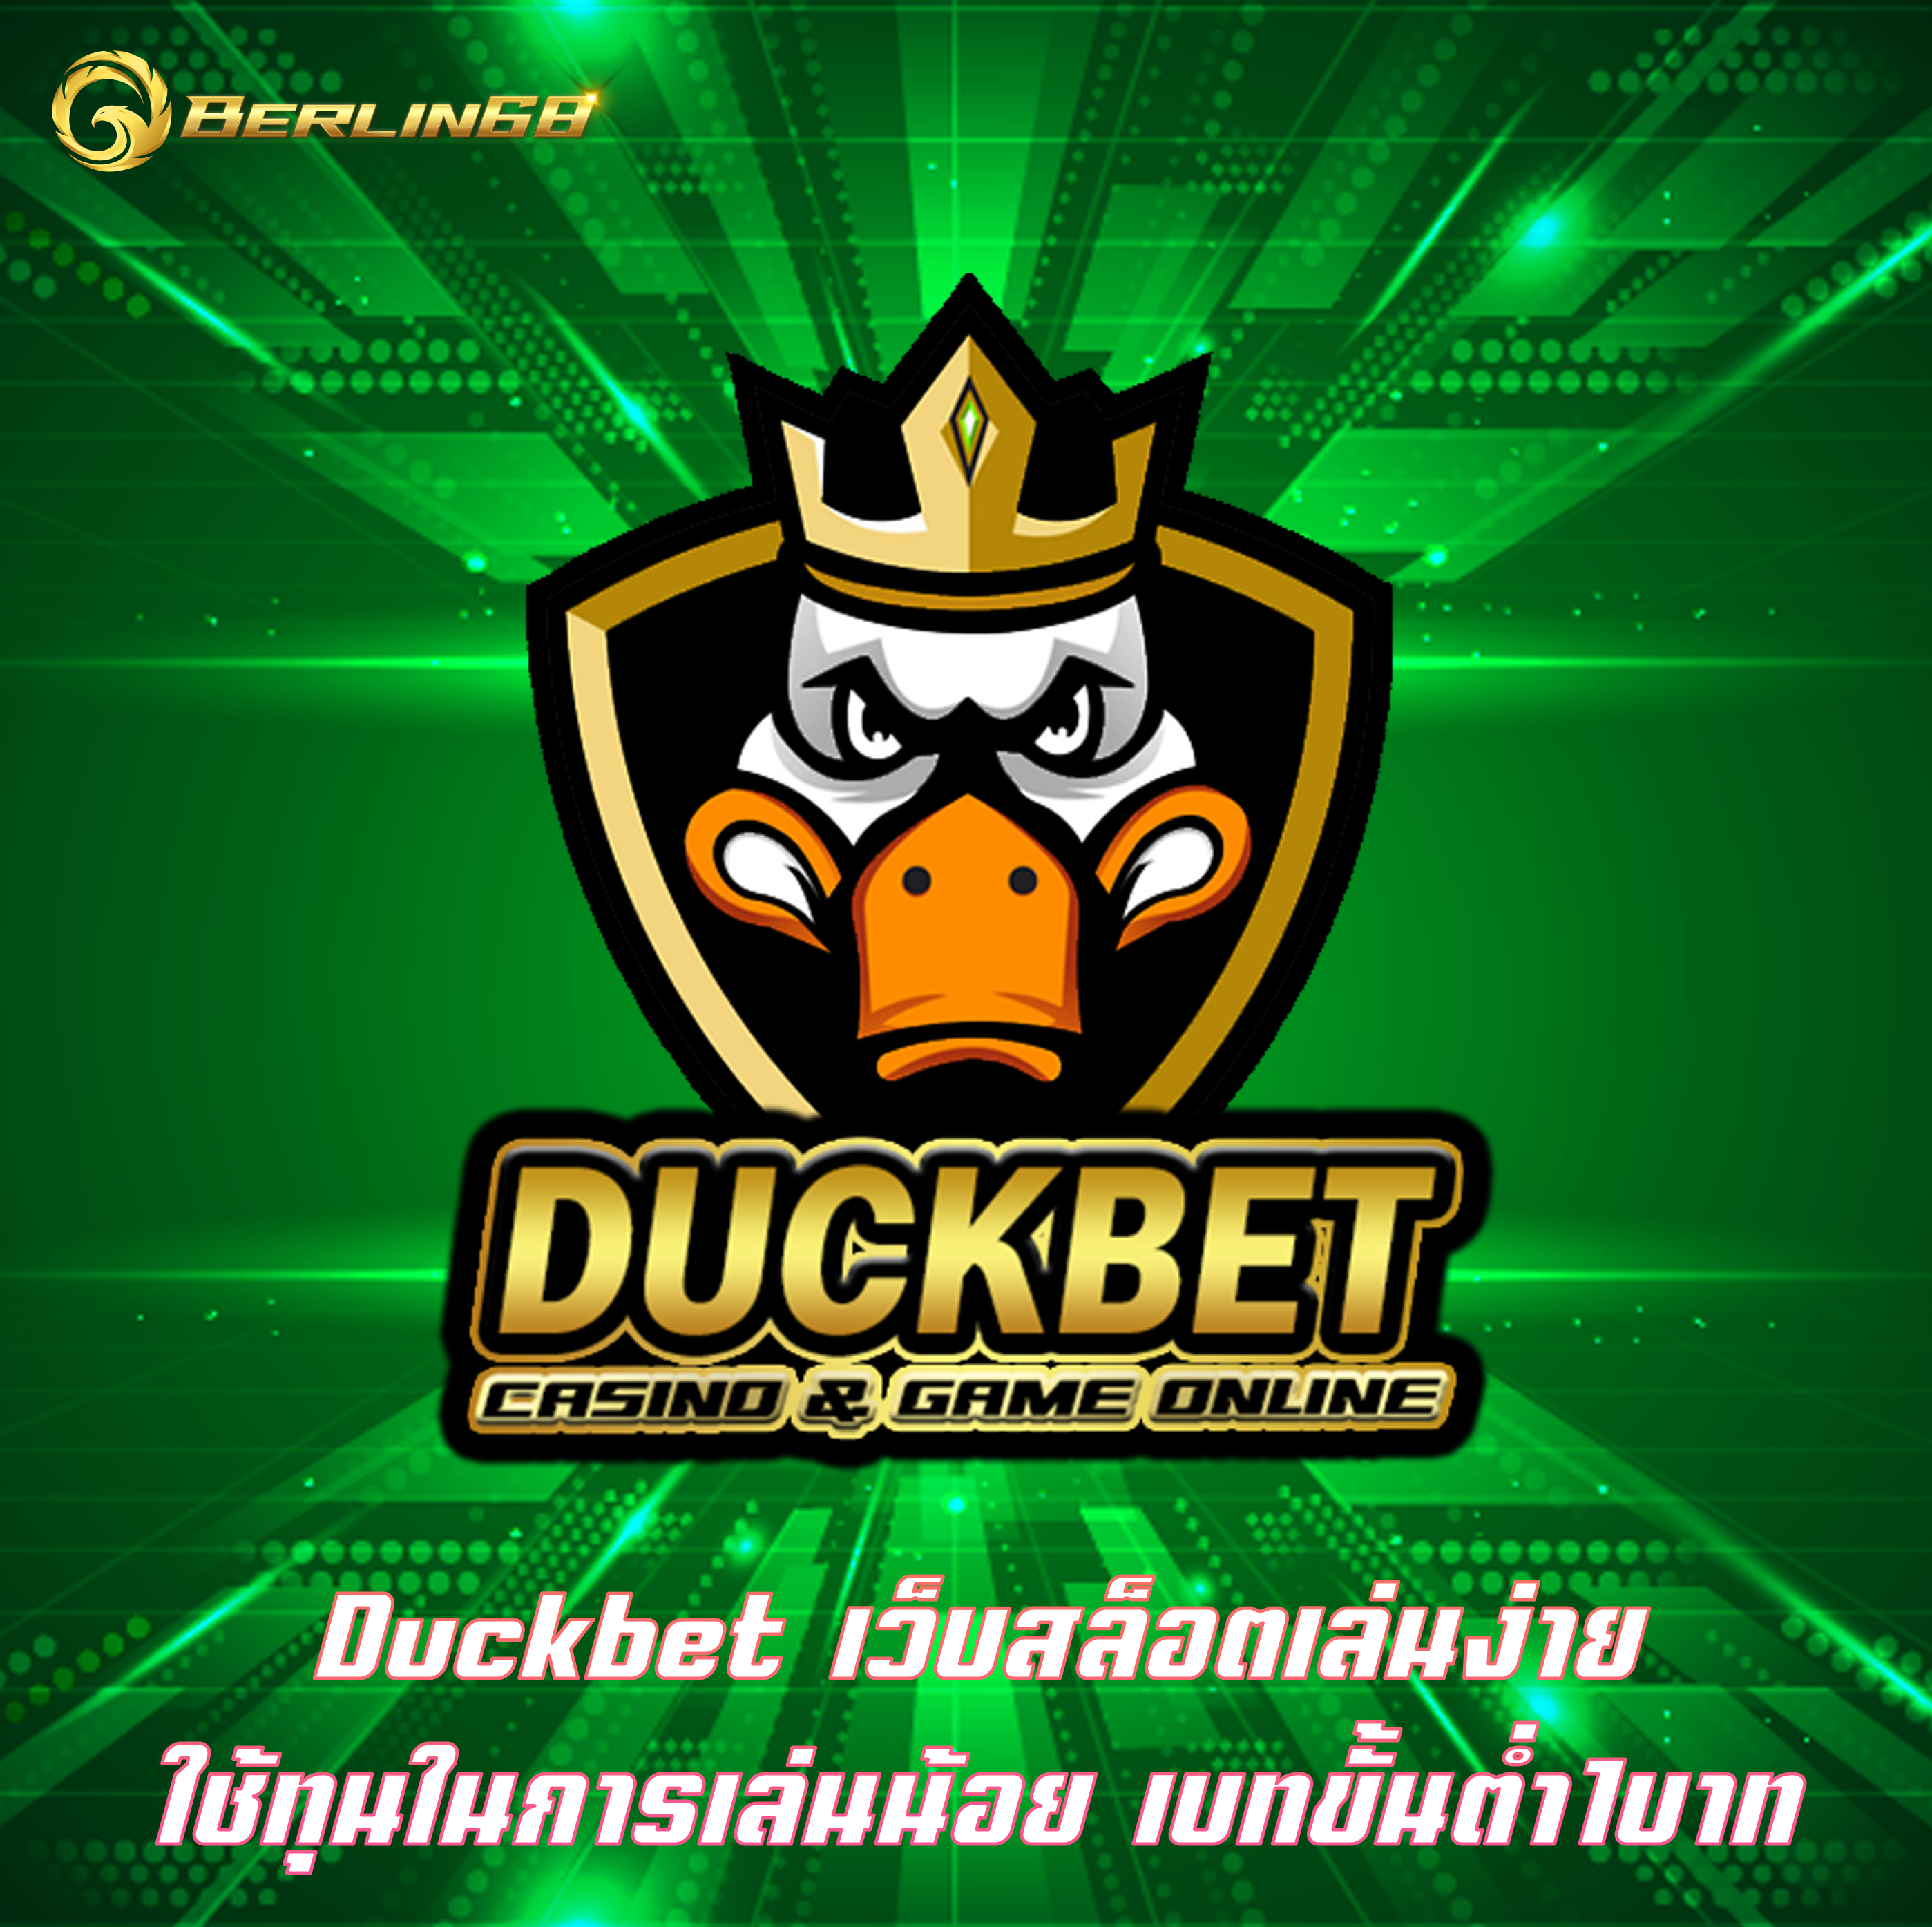 Duckbet เว็บสล็อตเล่นง่าย ใช้ทุนในการเล่นน้อย เบทขั้นต่ำ1บาท